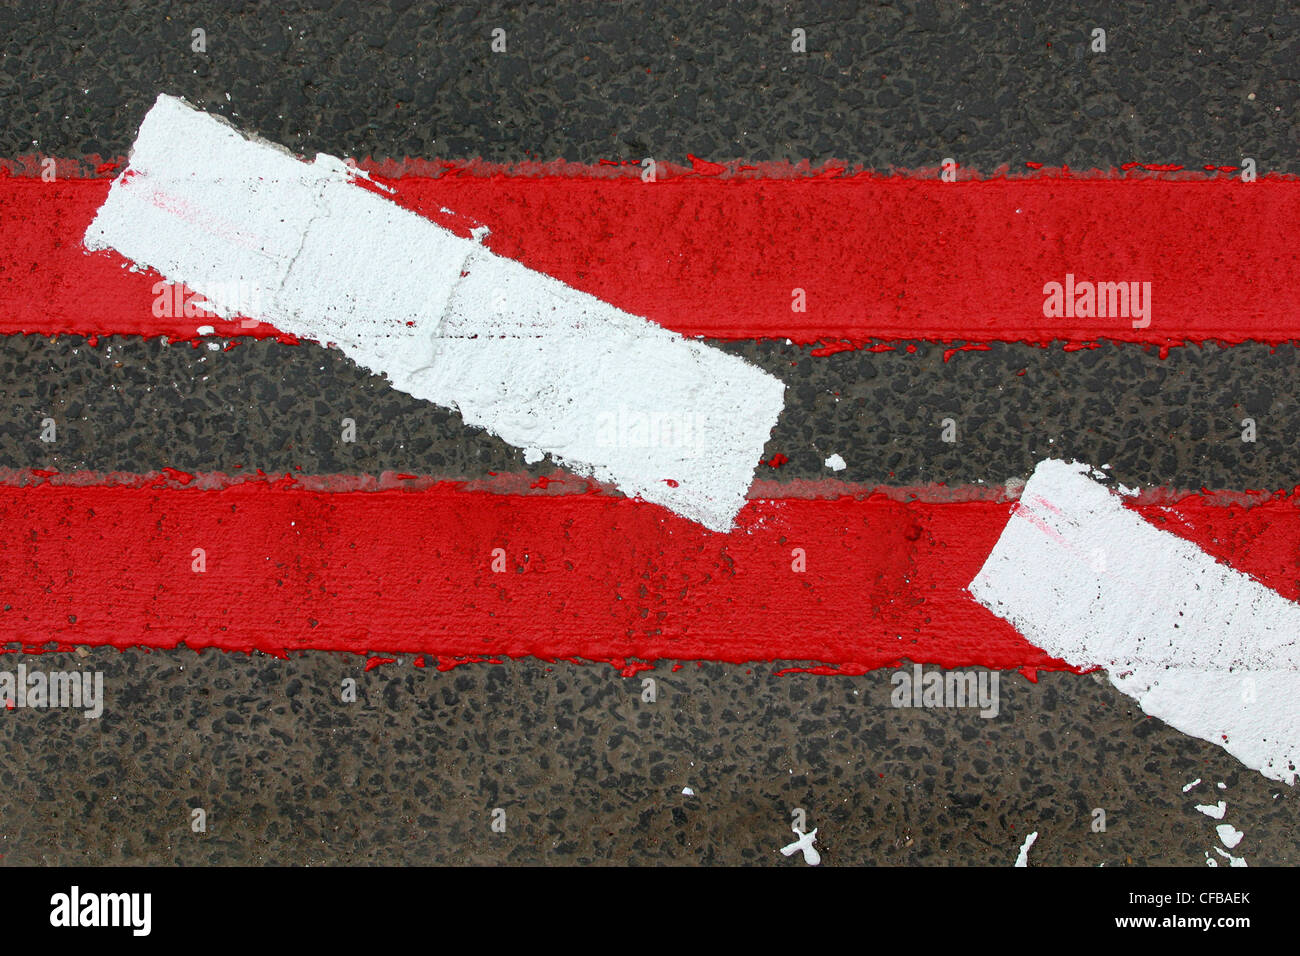 Le marquage routier nouvellement peintes sur les itinéraires rouge indiquant l'absence de stationnement ou attendent le long des routes désignées, Londres, Royaume-Uni. Banque D'Images